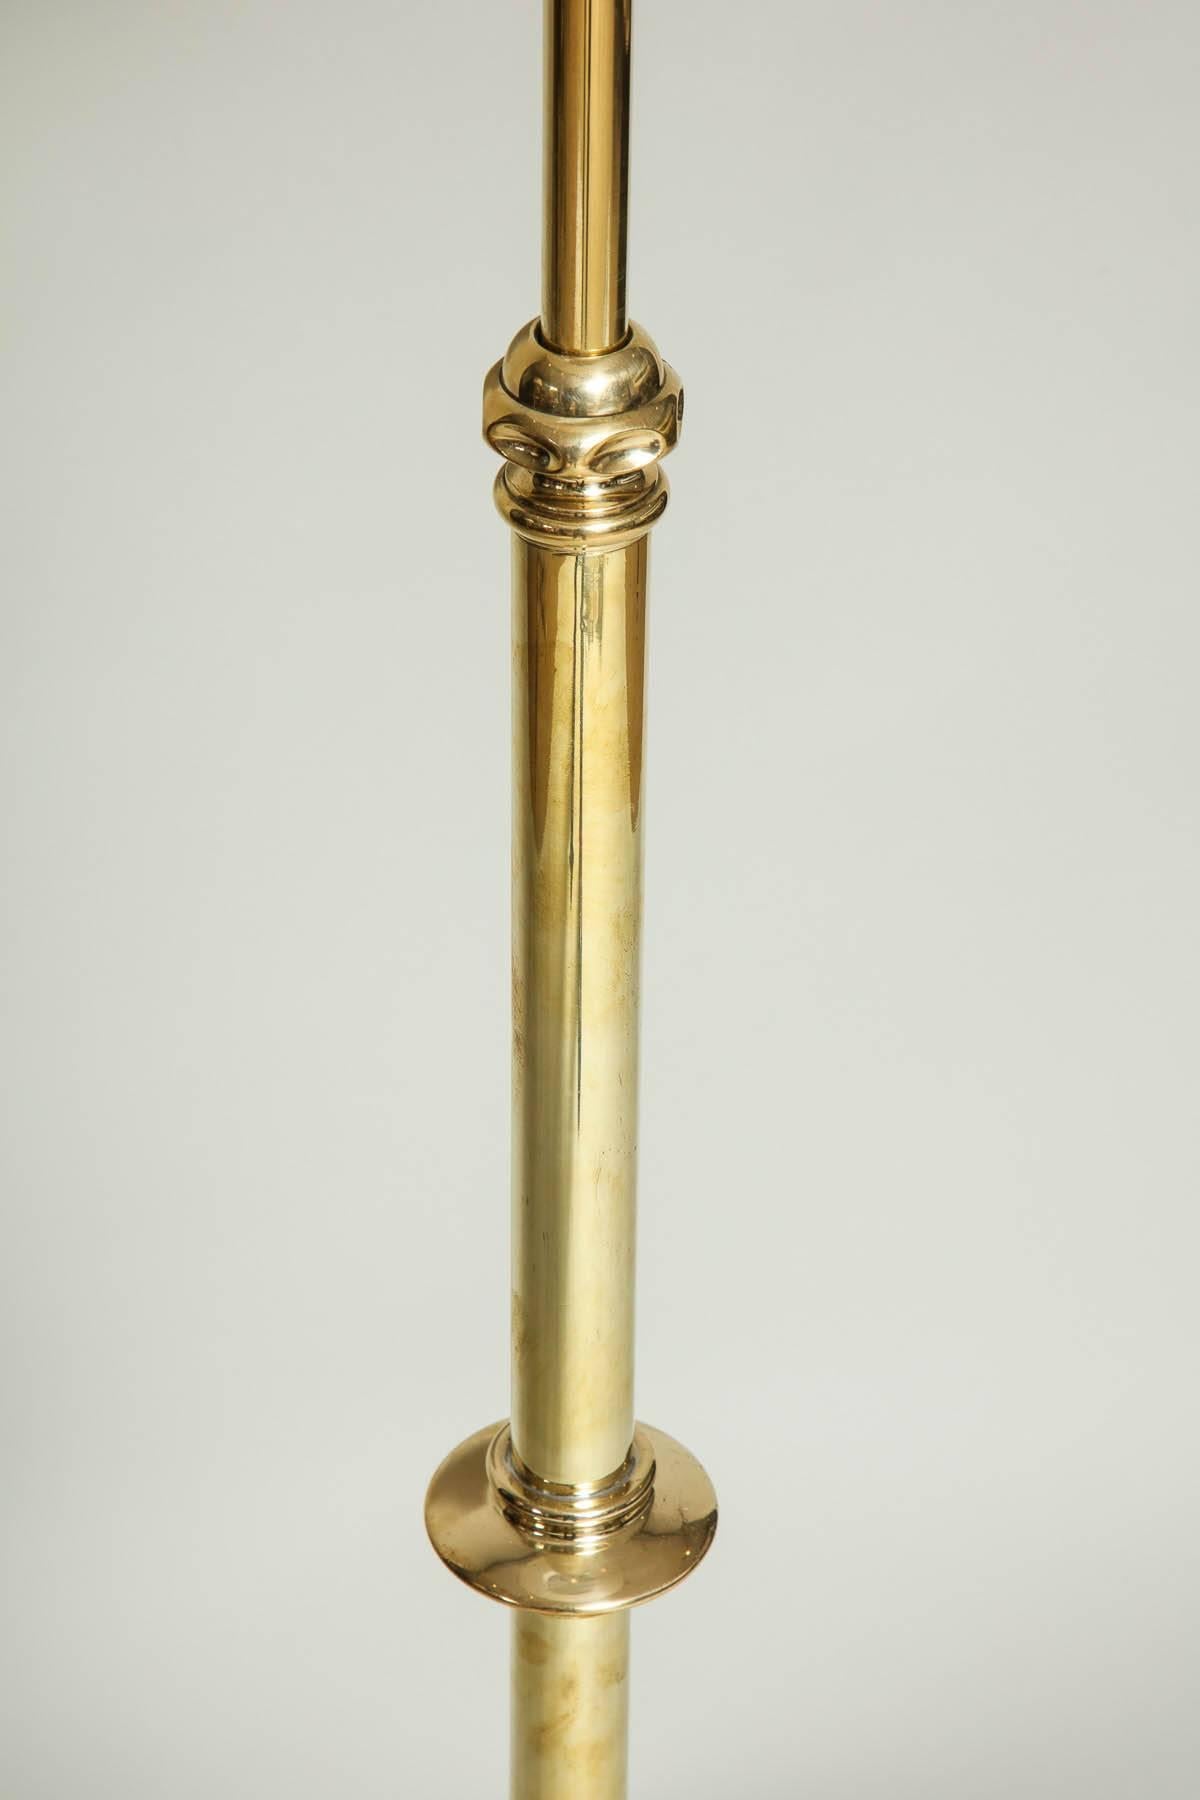 Great Britain (UK) Adjustable Brass Floor Lamp